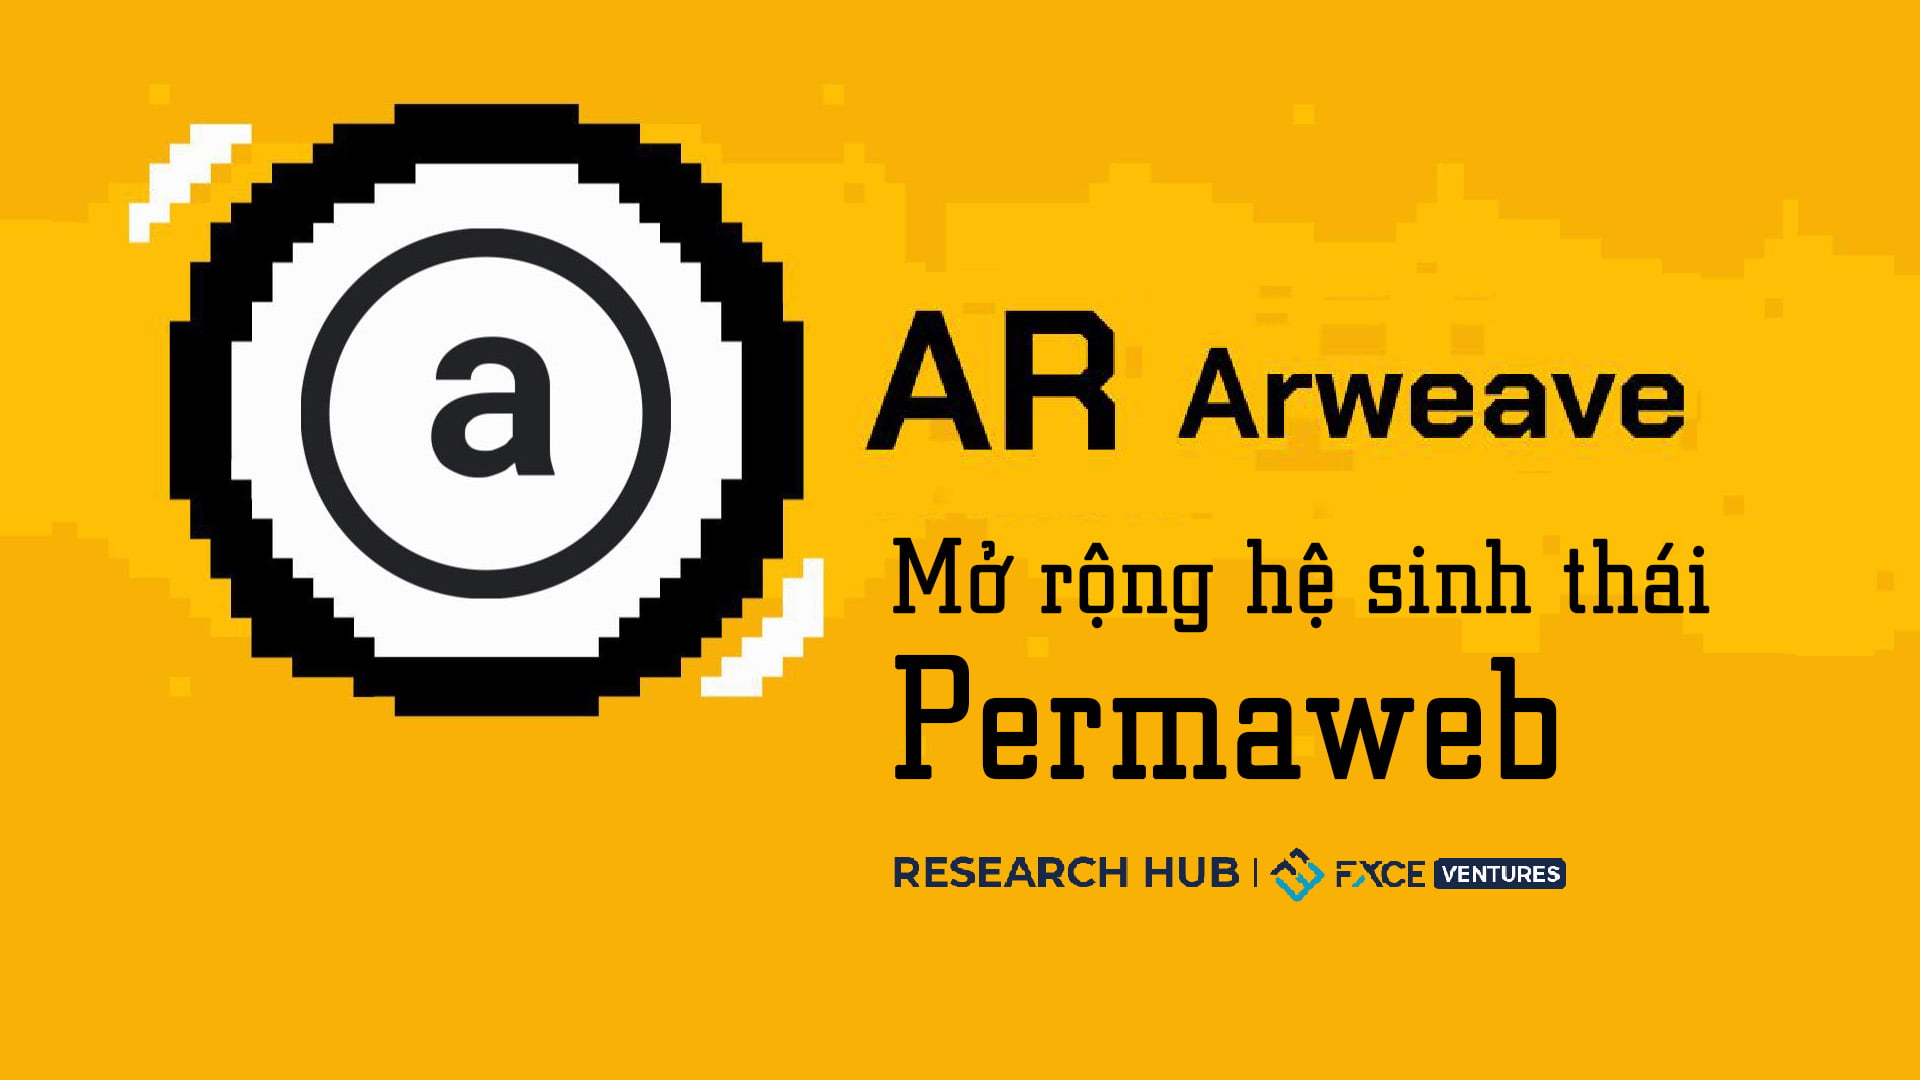 Arweave: Mở rộng hệ sinh thái Permaweb